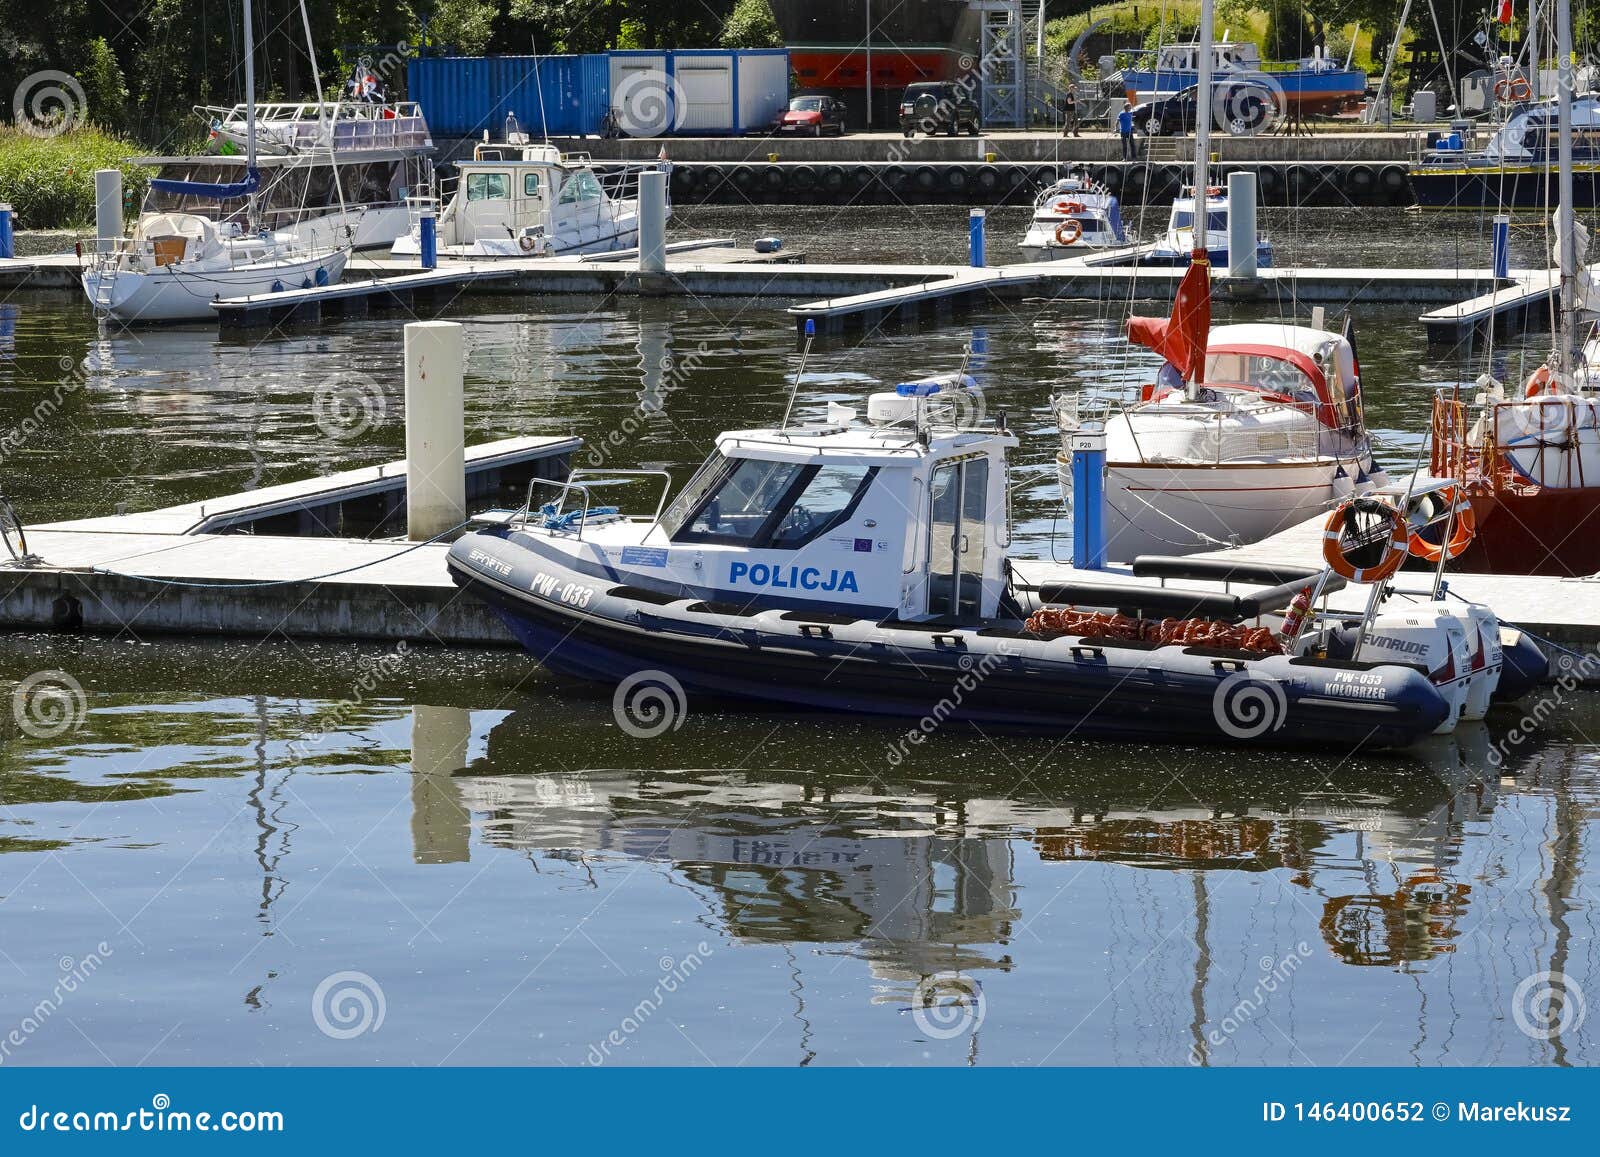 motorboat police officer